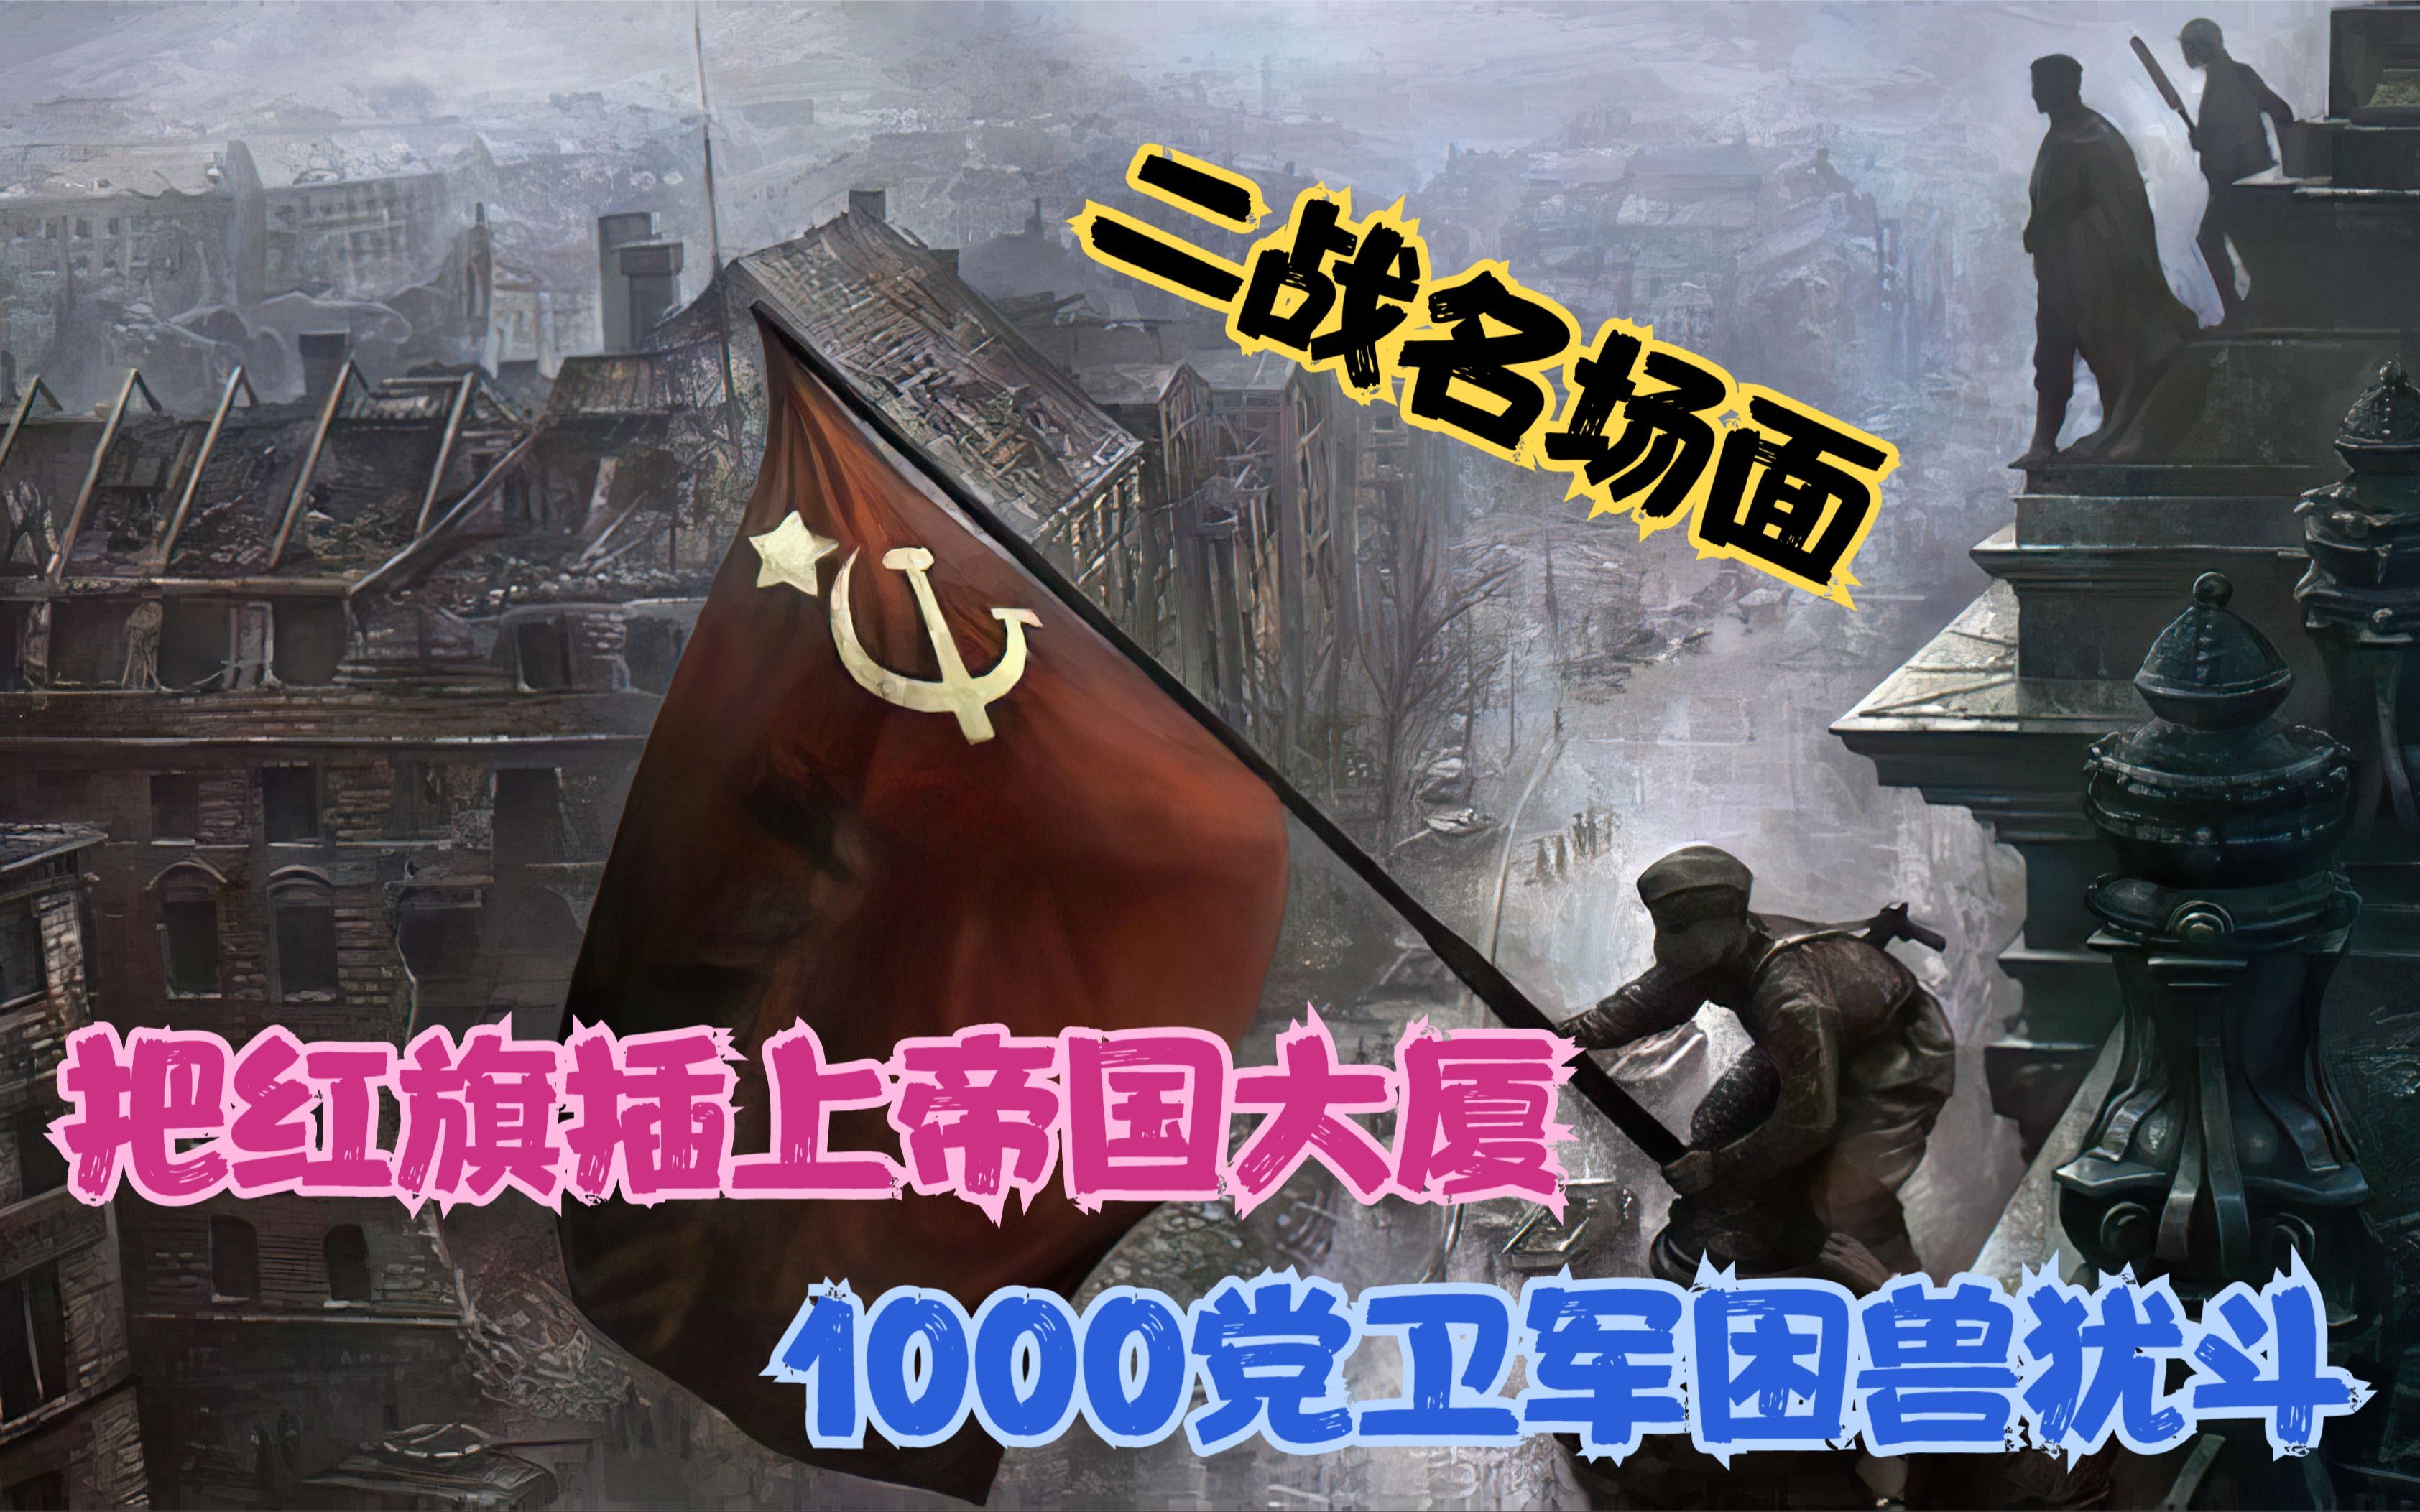 把红旗插上帝国大厦:1000名党卫军困兽犹斗,哈萨克勇士插旗致胜!